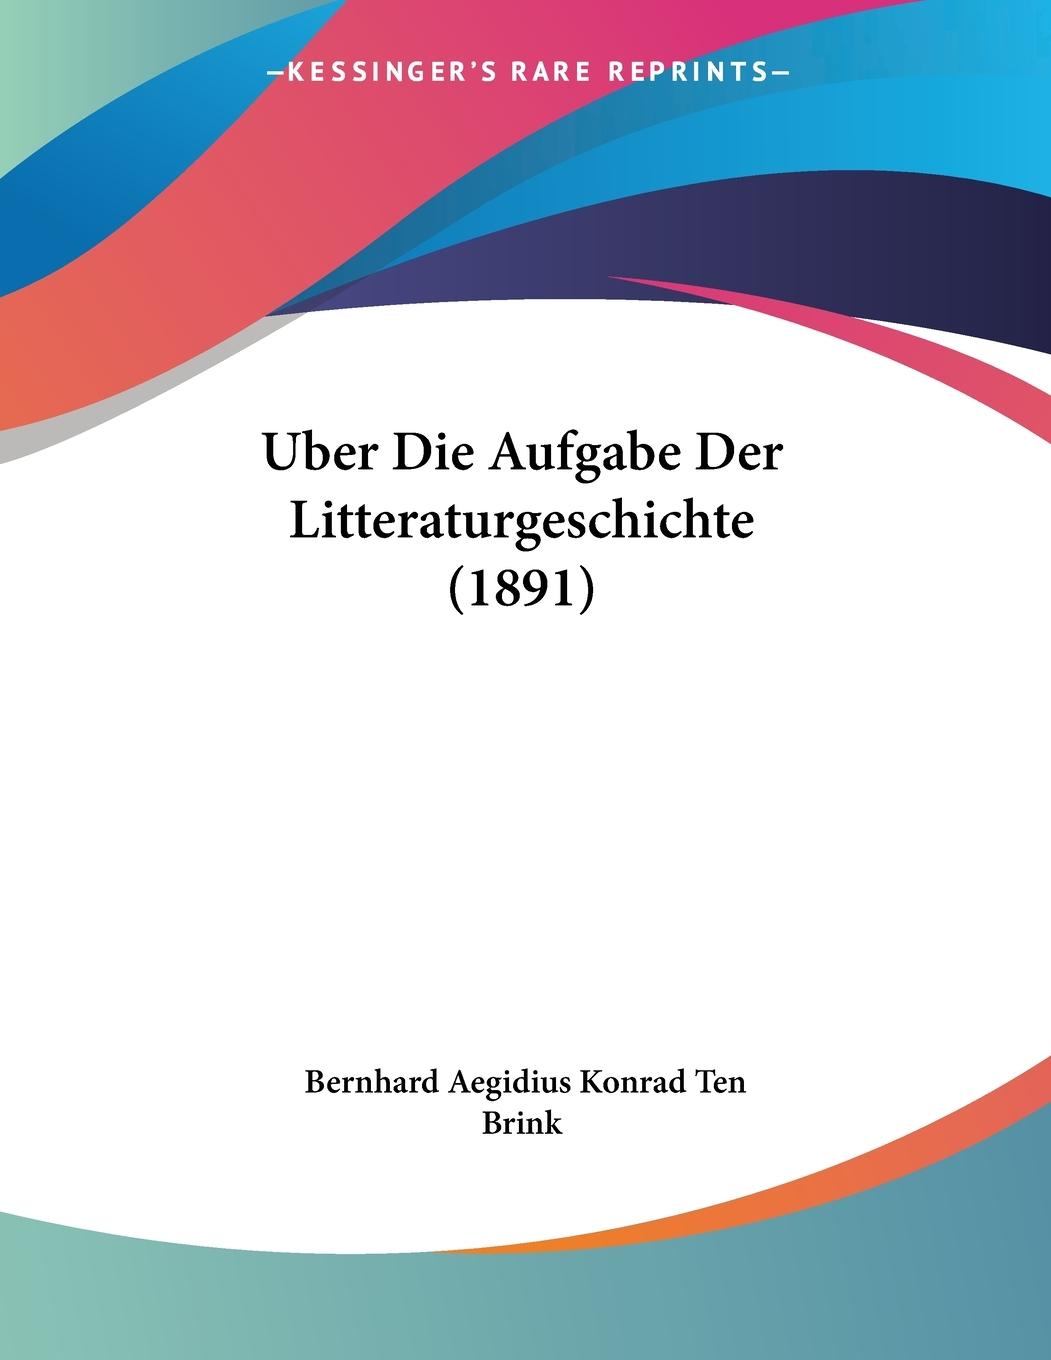 Uber Die Aufgabe Der Litteraturgeschichte (1891) - Brink, Bernhard Aegidius Konrad Ten